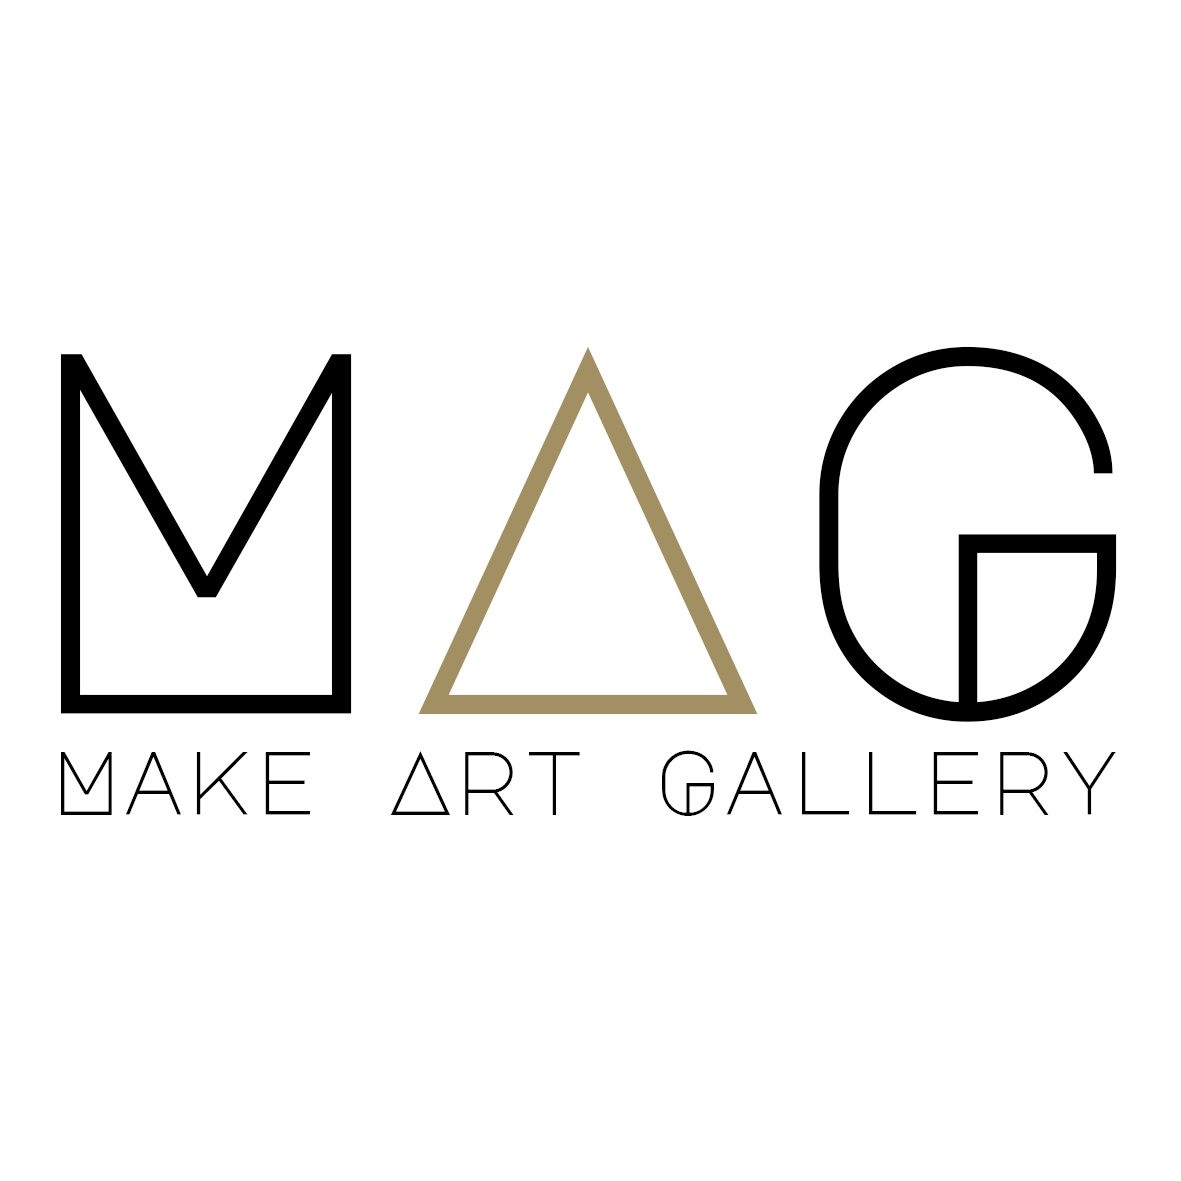 Arte accessibile direttamente dall'artista | Make Art Gallery